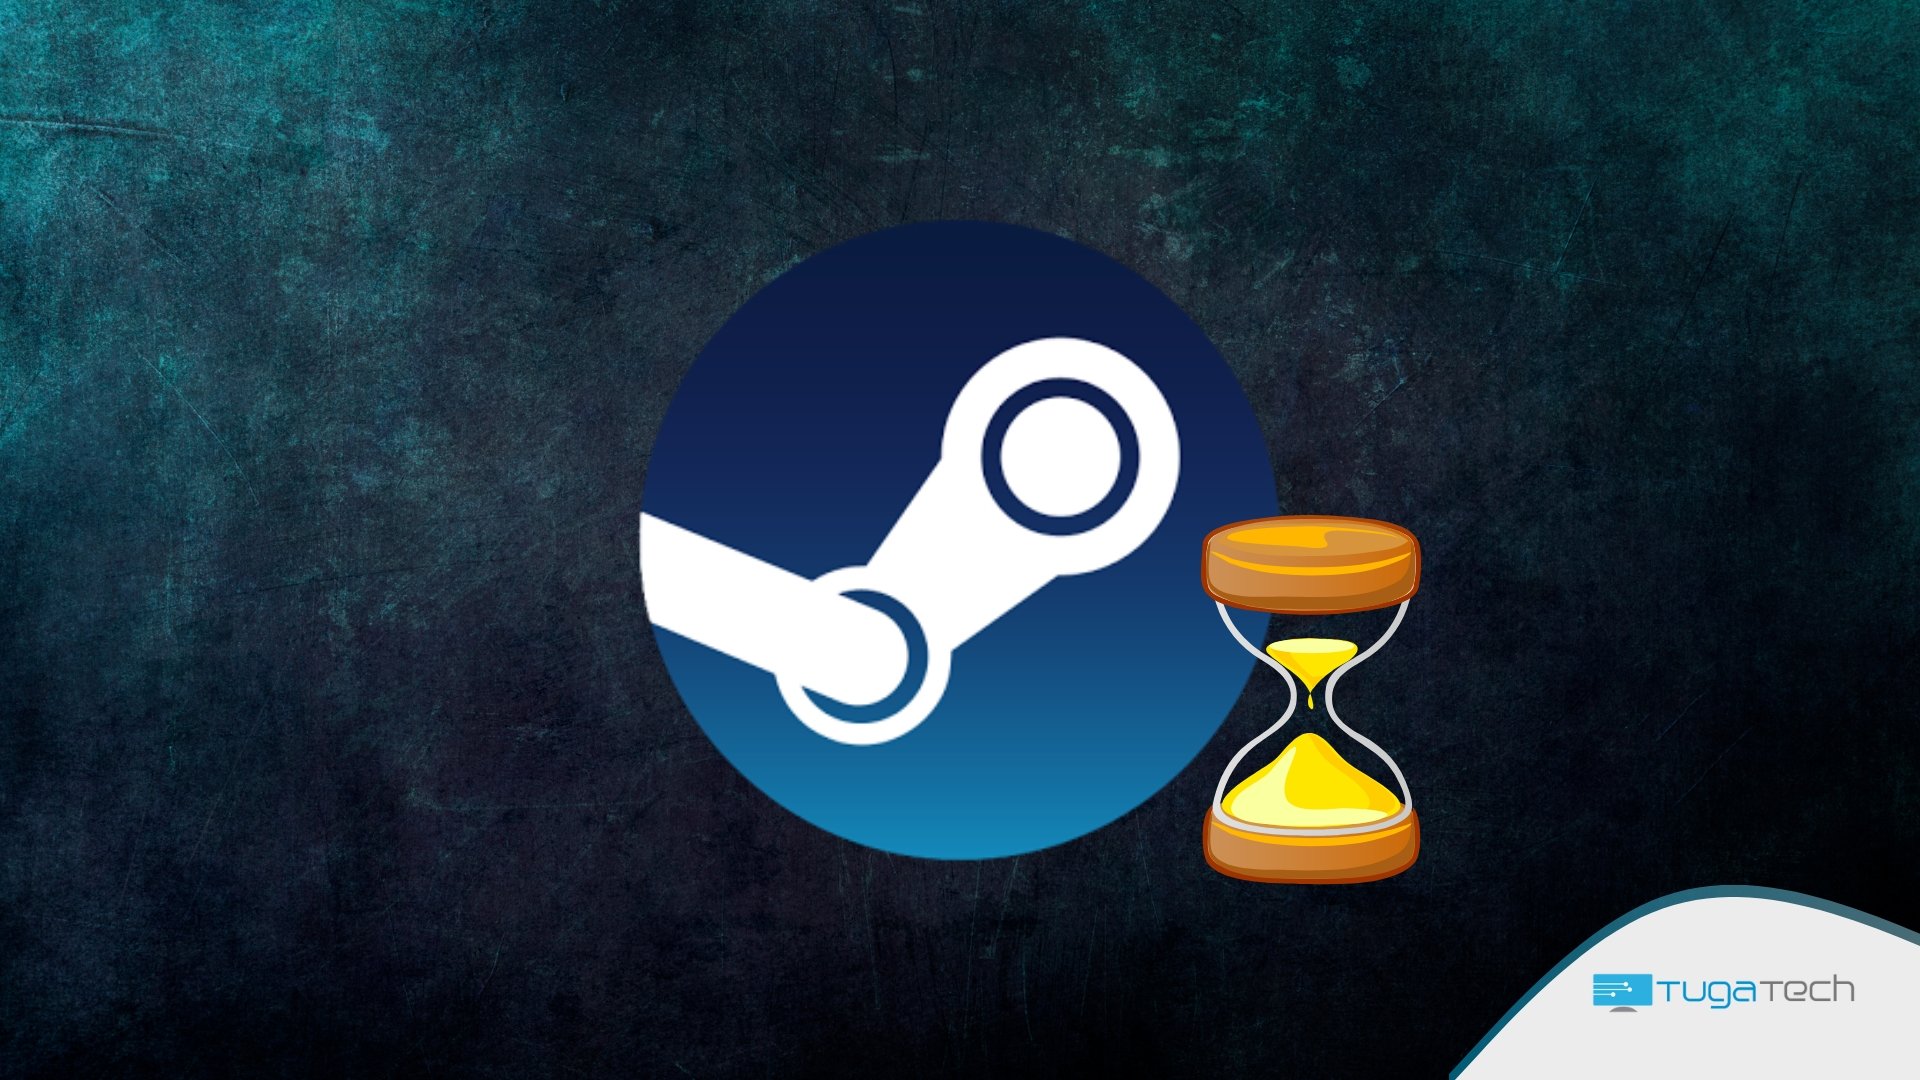 Steam agora permite o teste limitado de jogos antes da compra